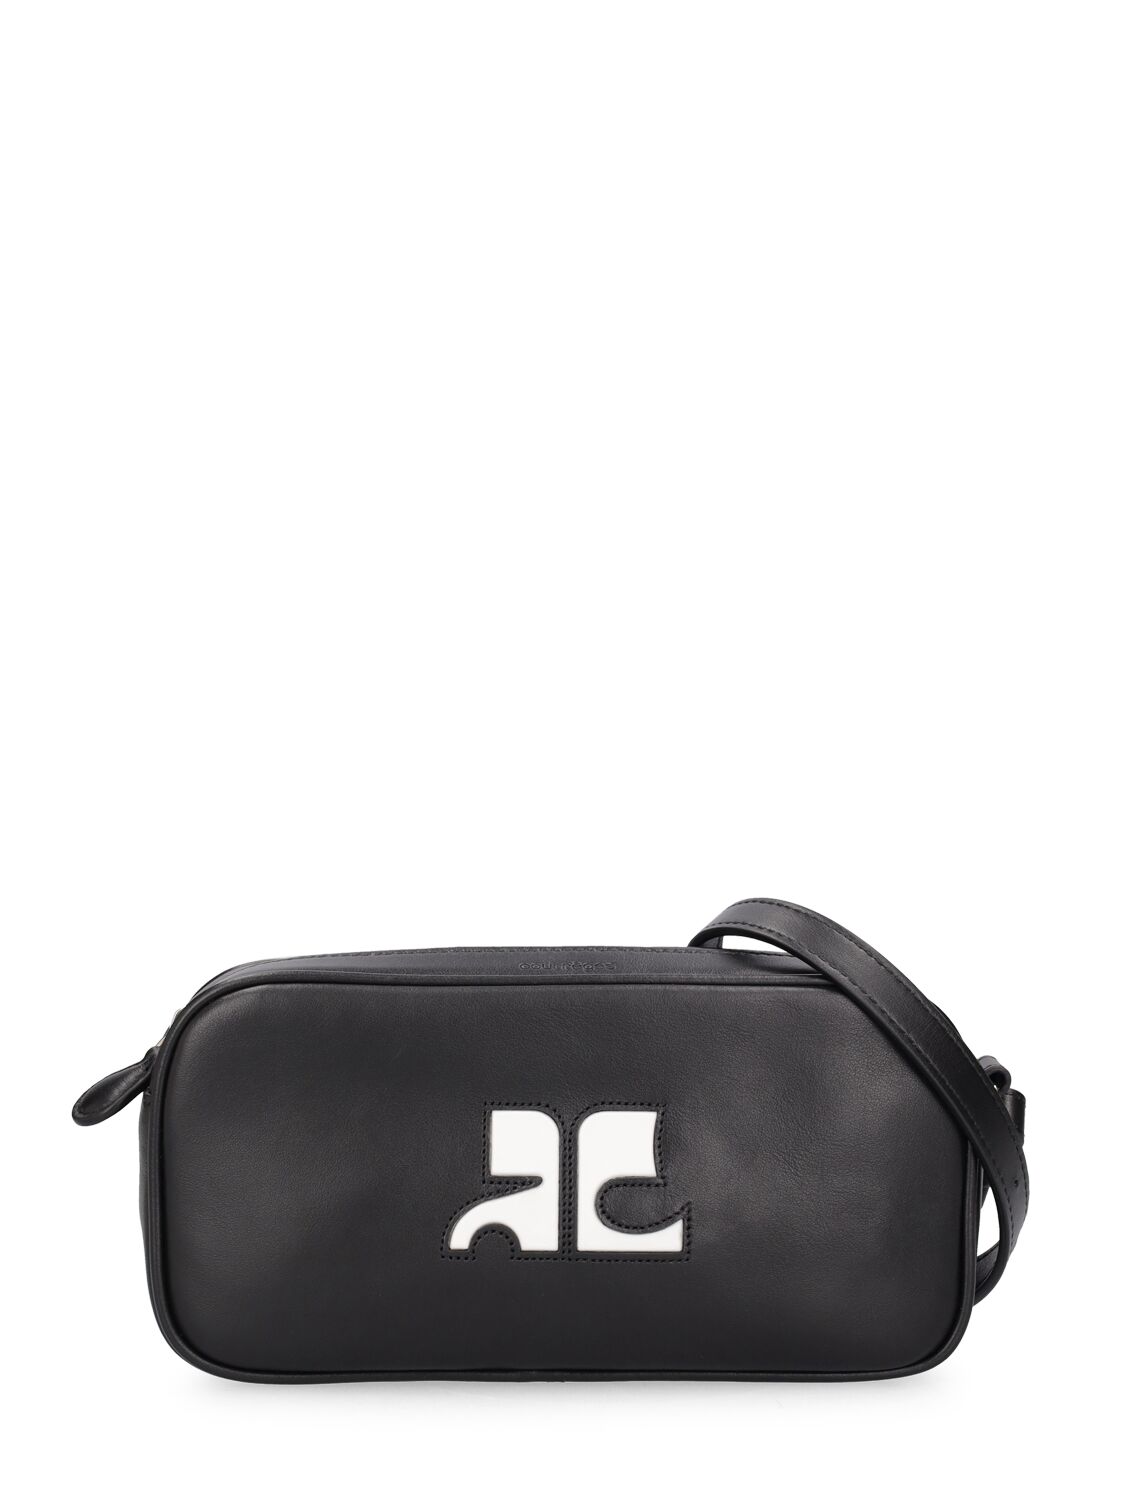 Image of Ac Leather Shoulder Bag